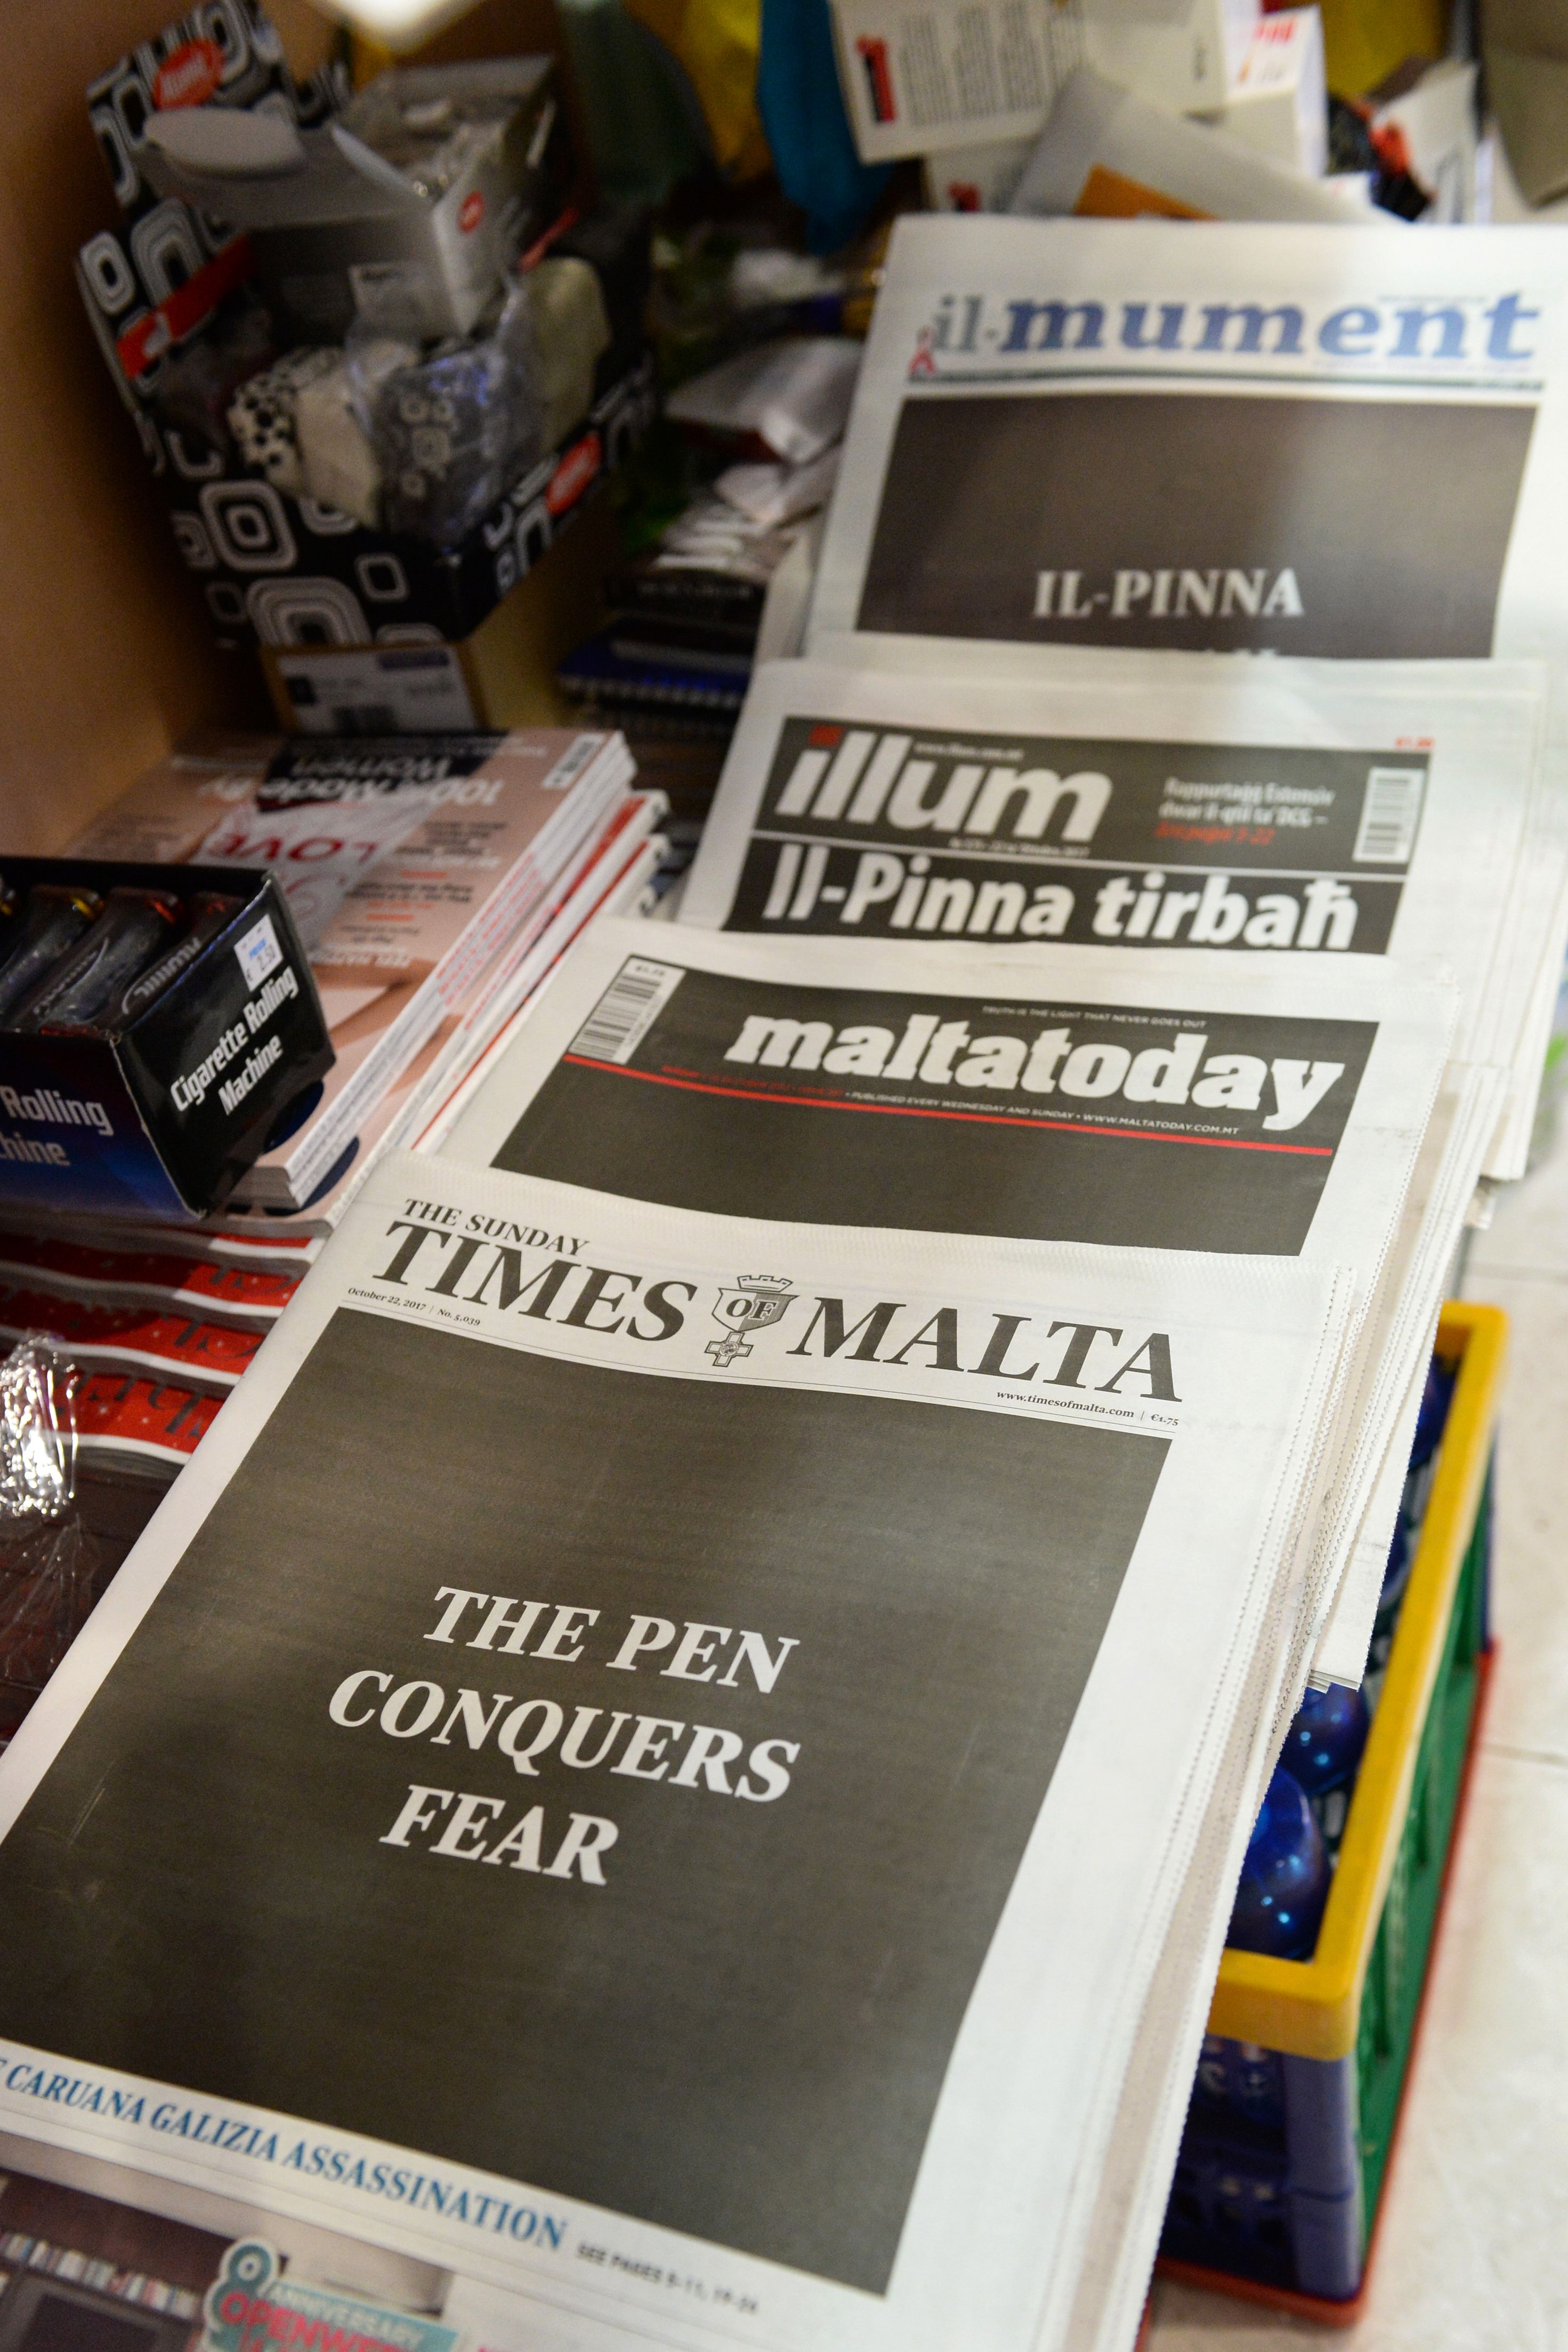 صحف مالطا وتعليقها على الحادث